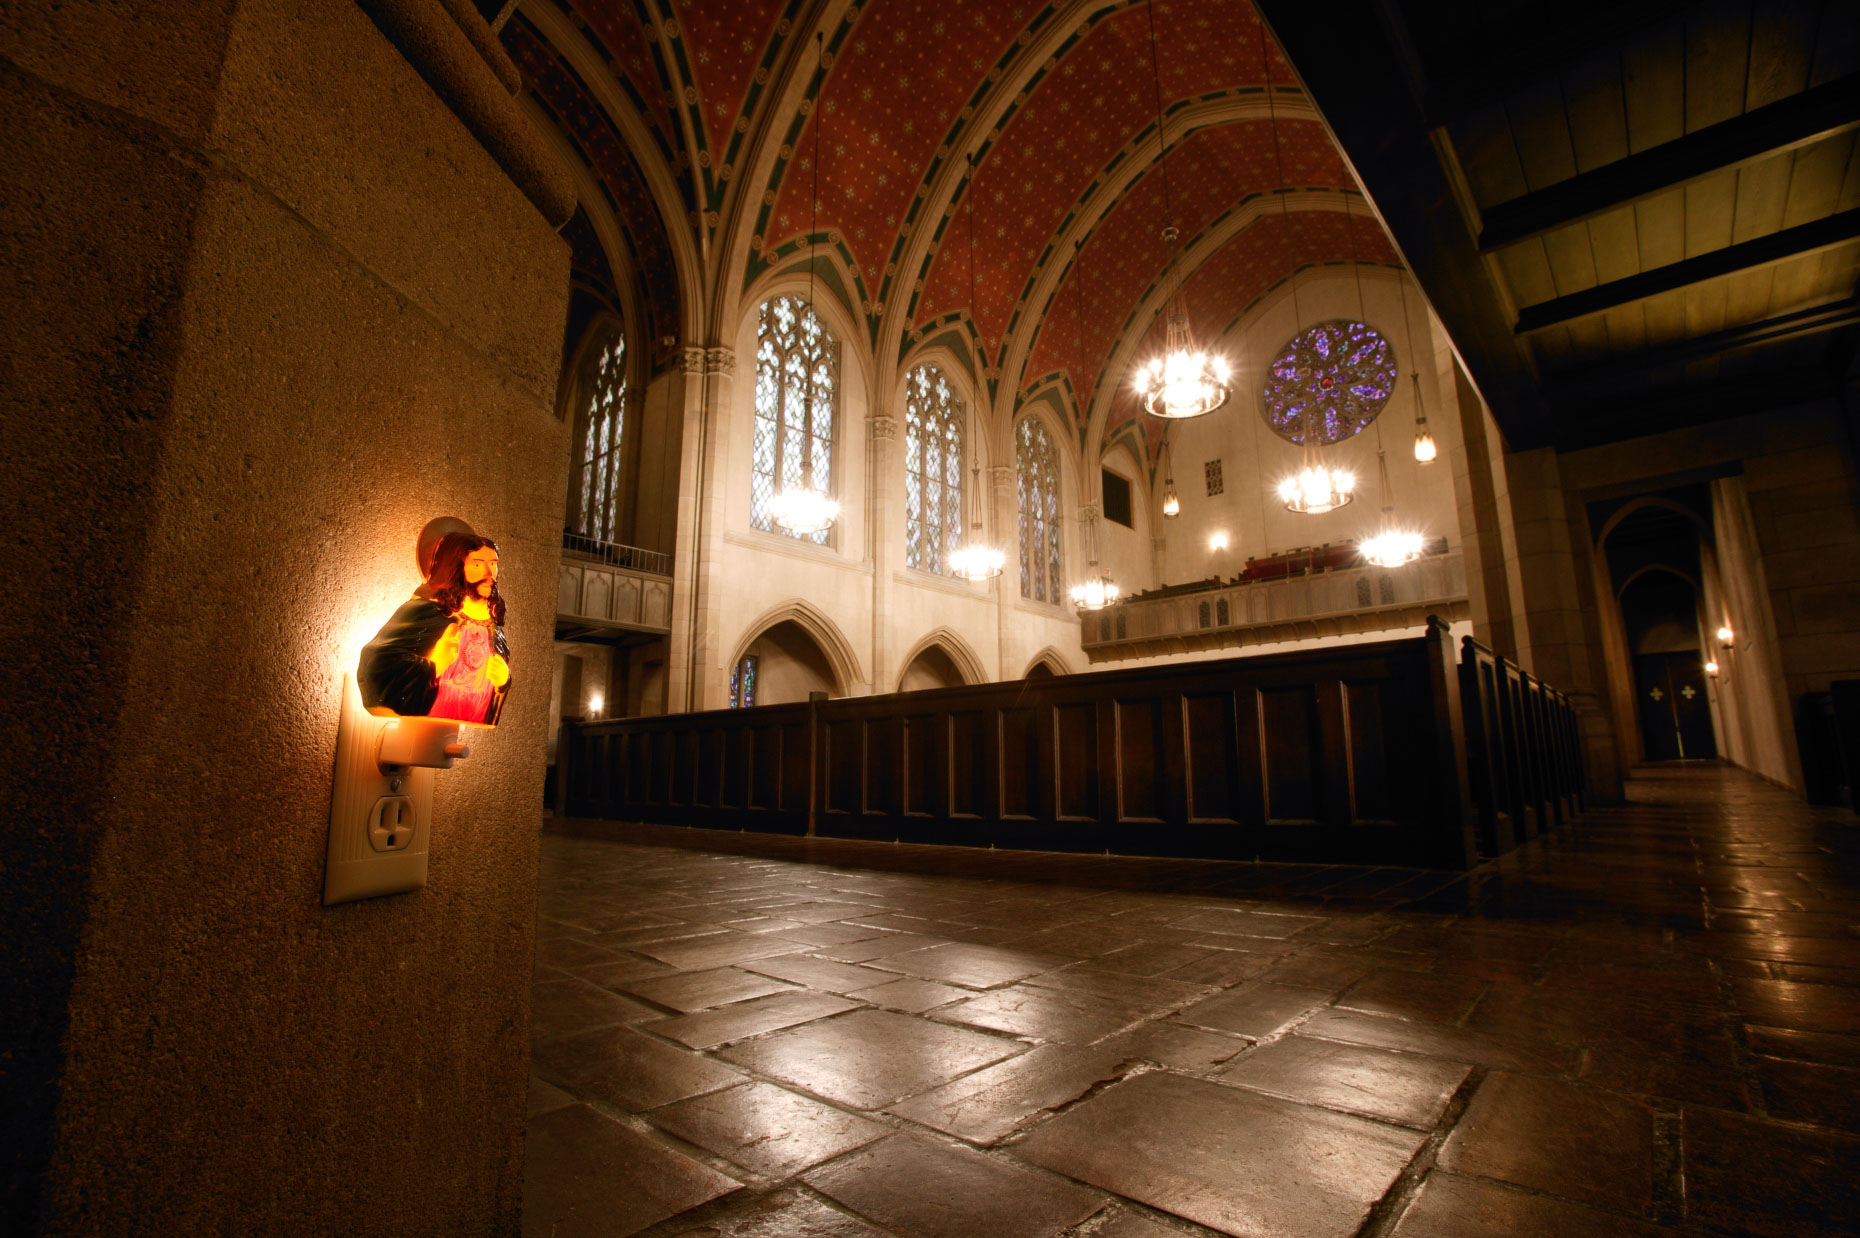 Jesus night light in church. David Zaitz